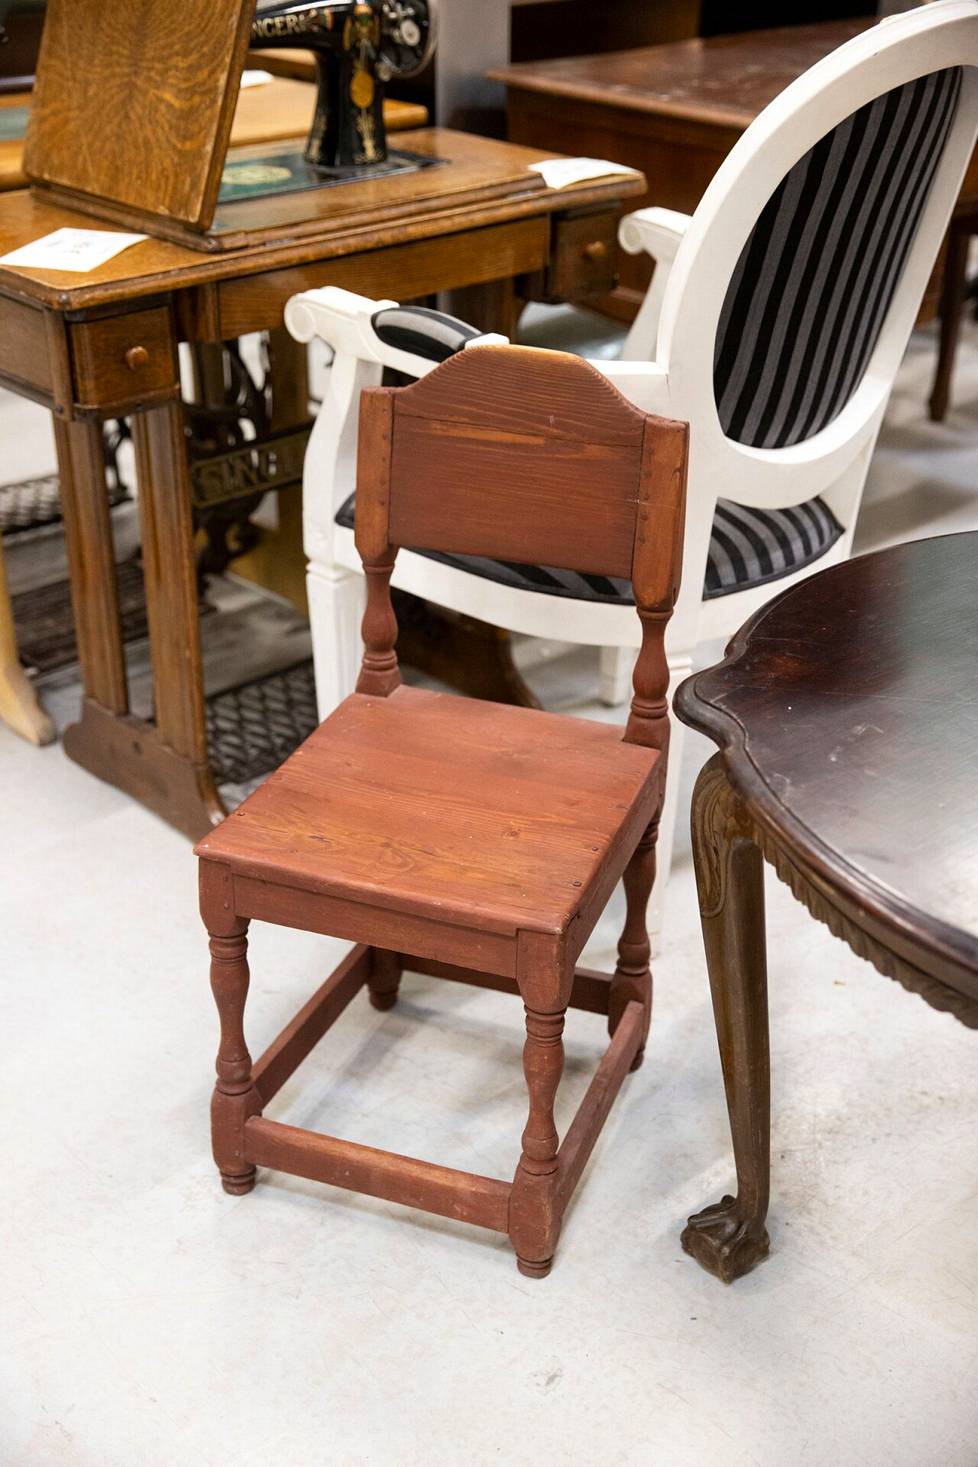 Sympaattinen vanha tuoli sopii vaikka yöpöydäksi. Perinteisiä yöpöytiä ei enää Kierrätyskeskuksesta etsitä.